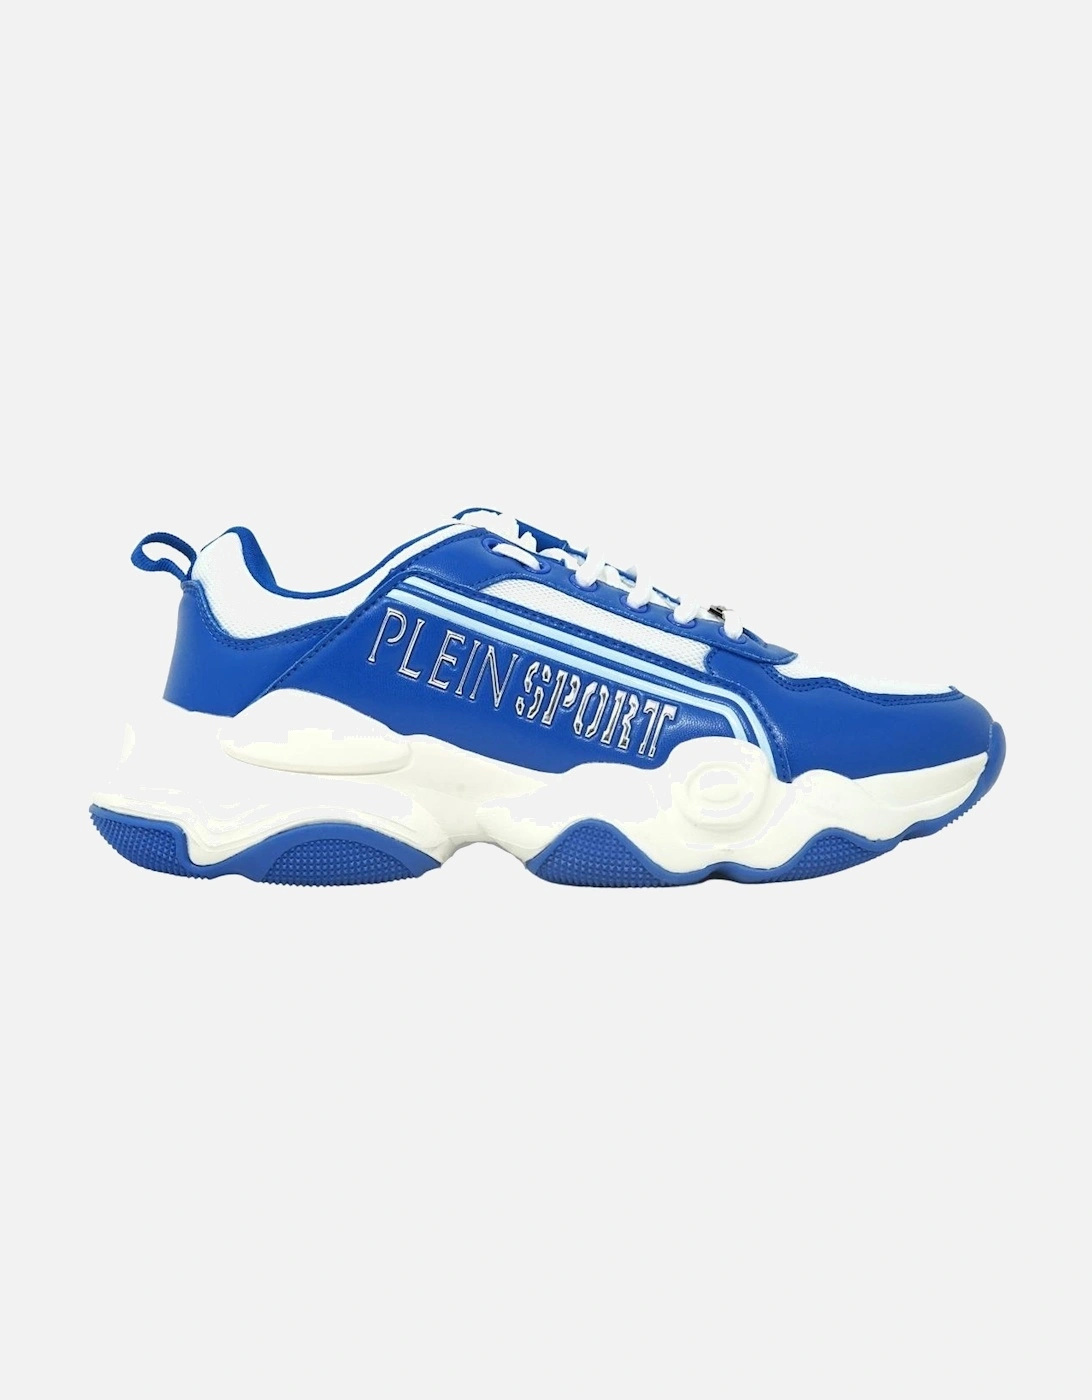 Plein Sport Bold Brand Logo Blue Sneakers, 5 of 4